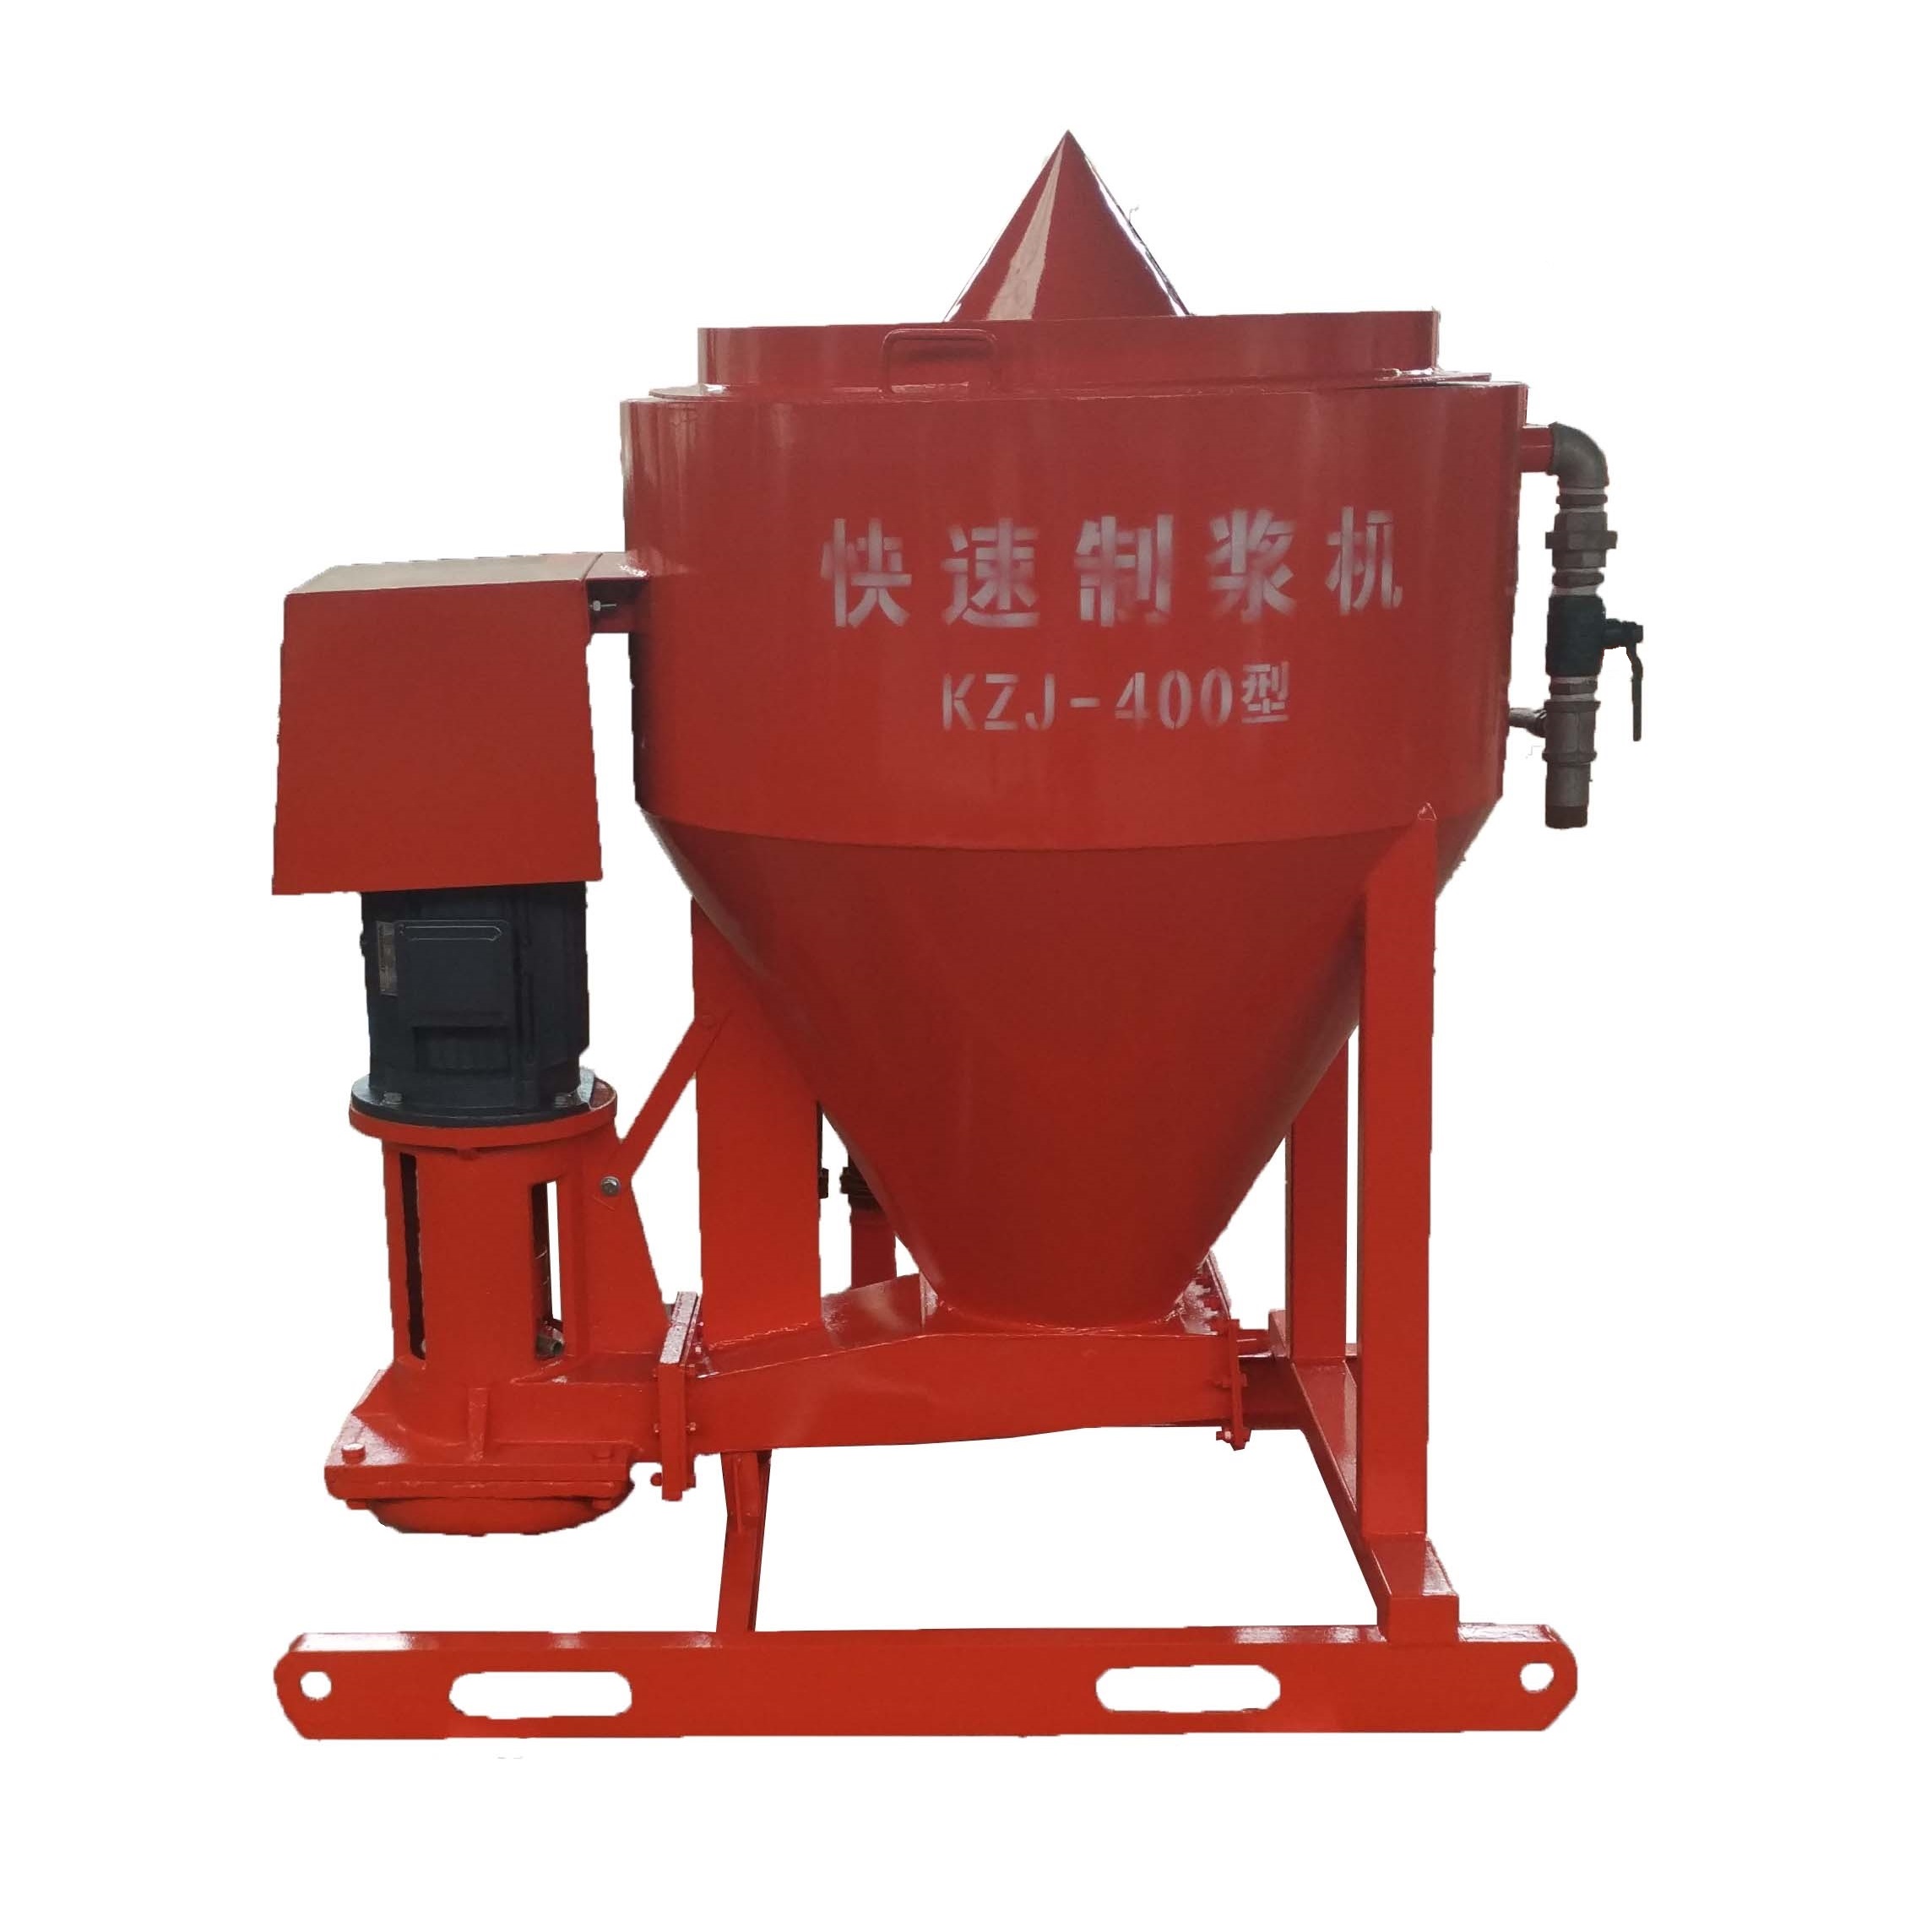 KZJ-400 Fast pulping machine